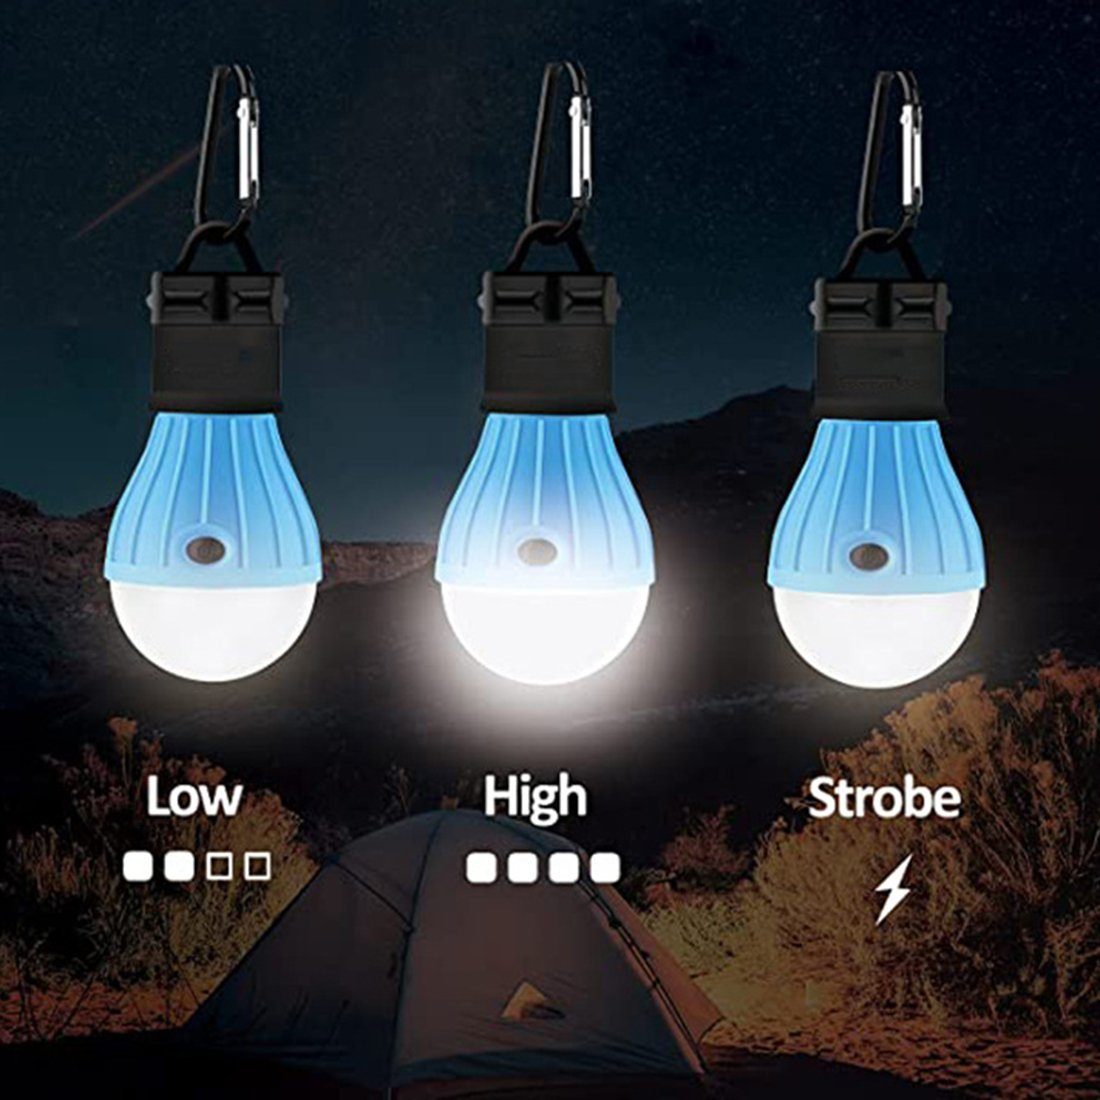 Haiaveng LED Außen-Tischleuchte 4 Campinglampe, Laterne Camping Stücke Abenteuer,Angeln,Stromausfall Notlicht,Camping LED Zeltlampe Wasserdicht Glühbirne, für Lampen